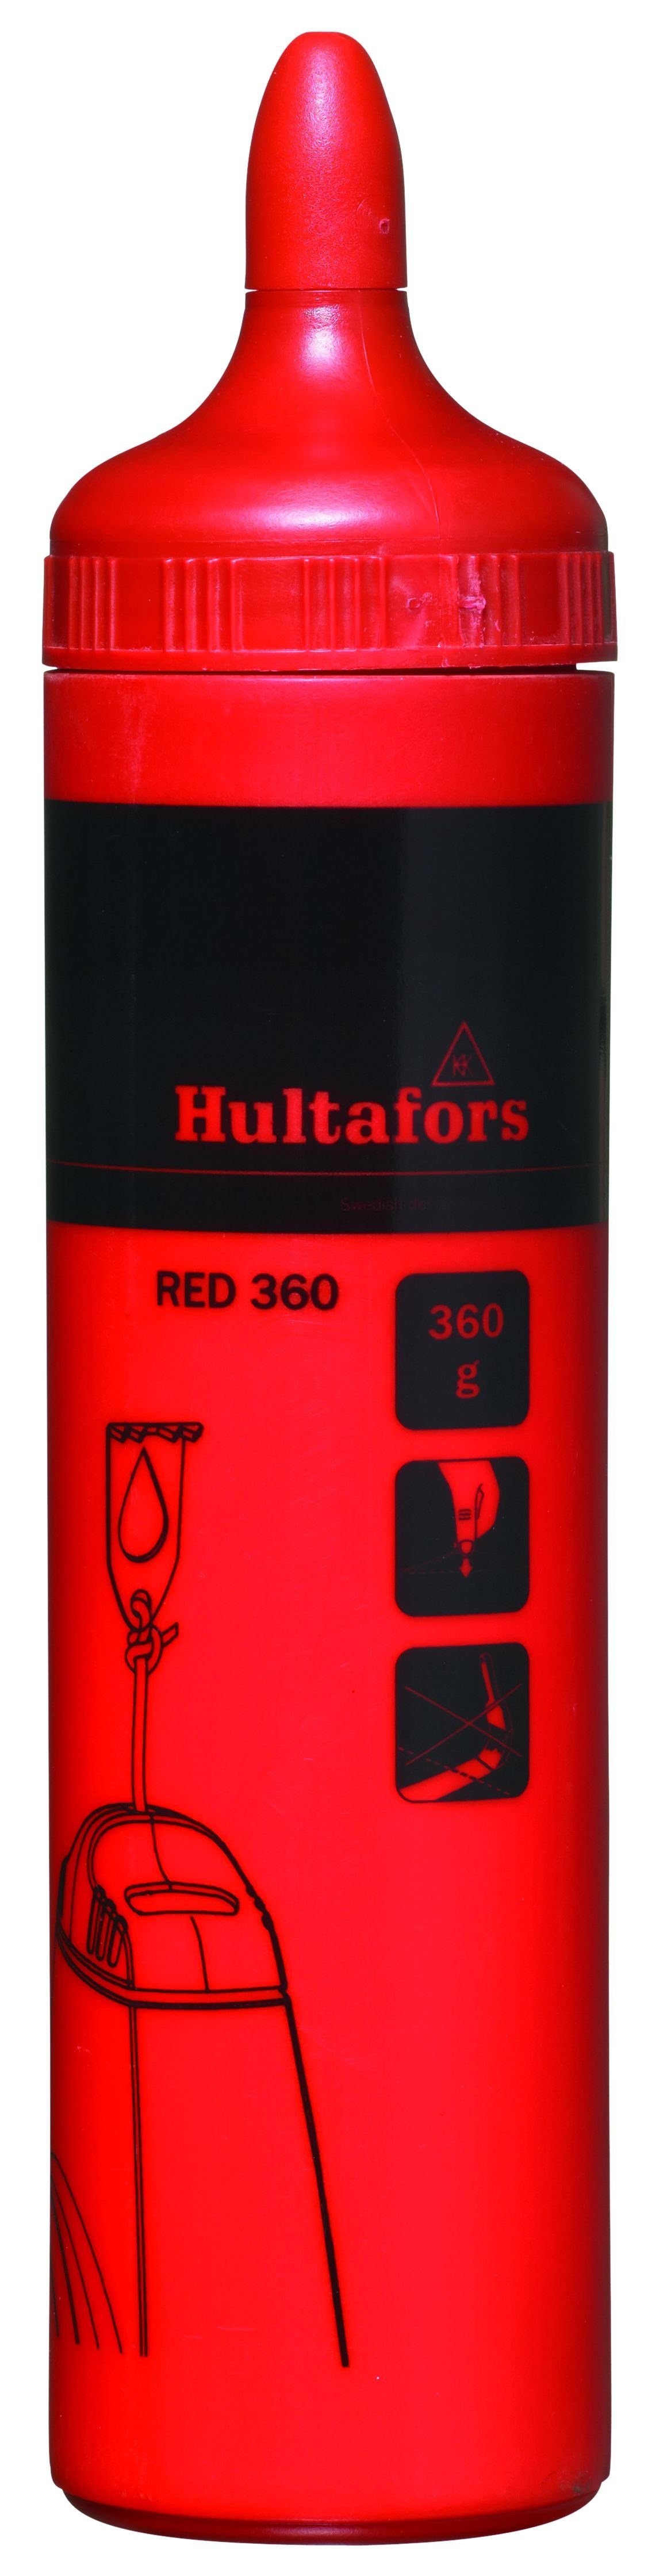 Heinz Hesse Kreide für rot Inhalt Schlagschnüre, Schlagschnur g 360 Farbpuder Hultafors 360 Red